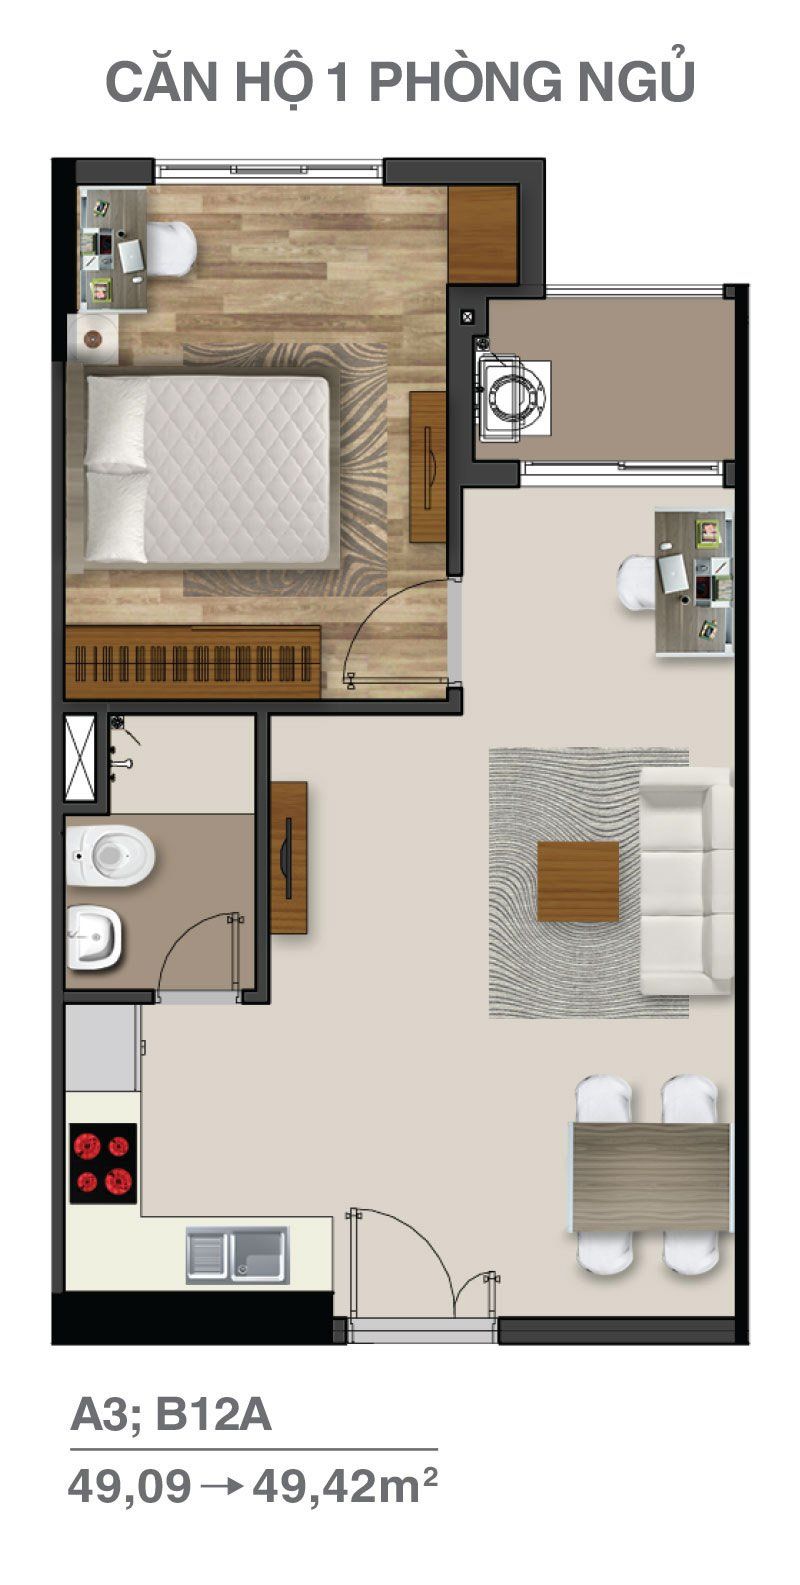 Thiết kế căn hộ 1 phòng ngủ diện tích từ 49.09 - 49.92m2